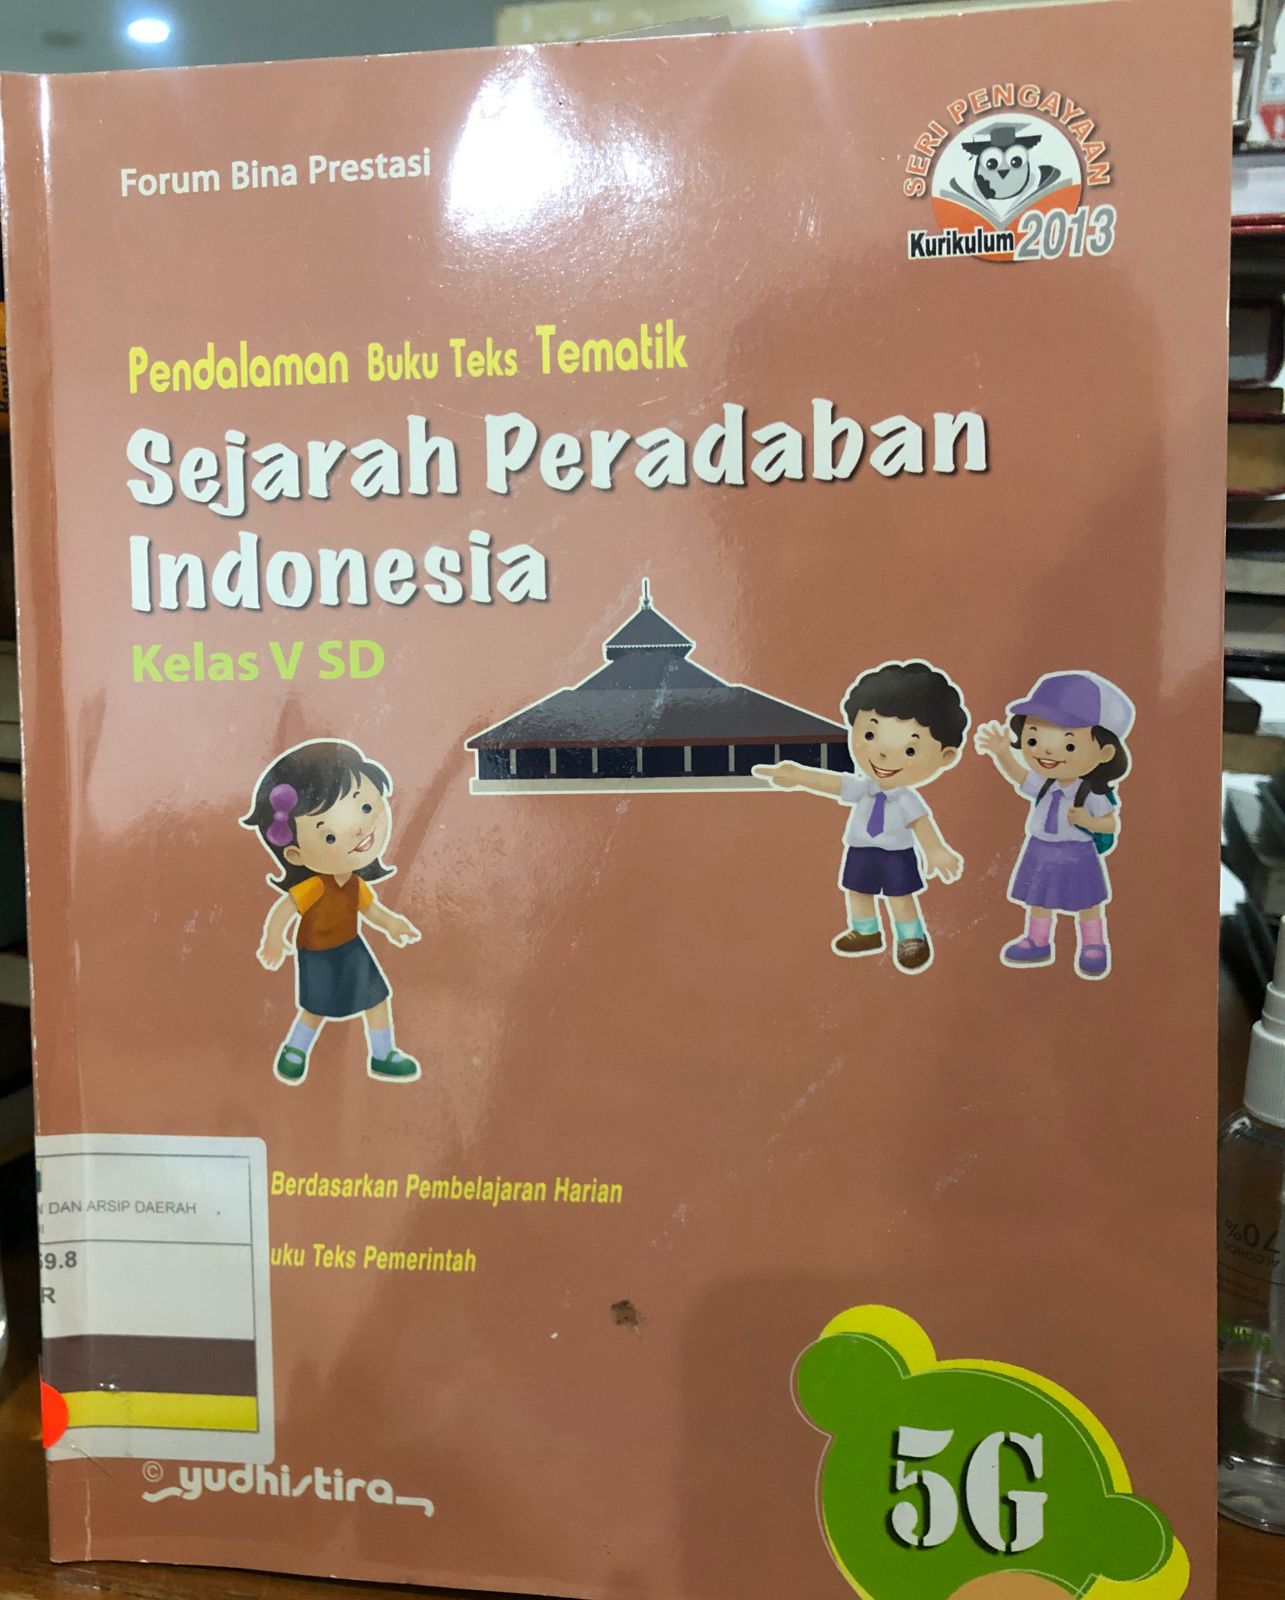 Pendalaman buku Teks Tematik Sejarah Peradaban Indonesia Kelas V SD